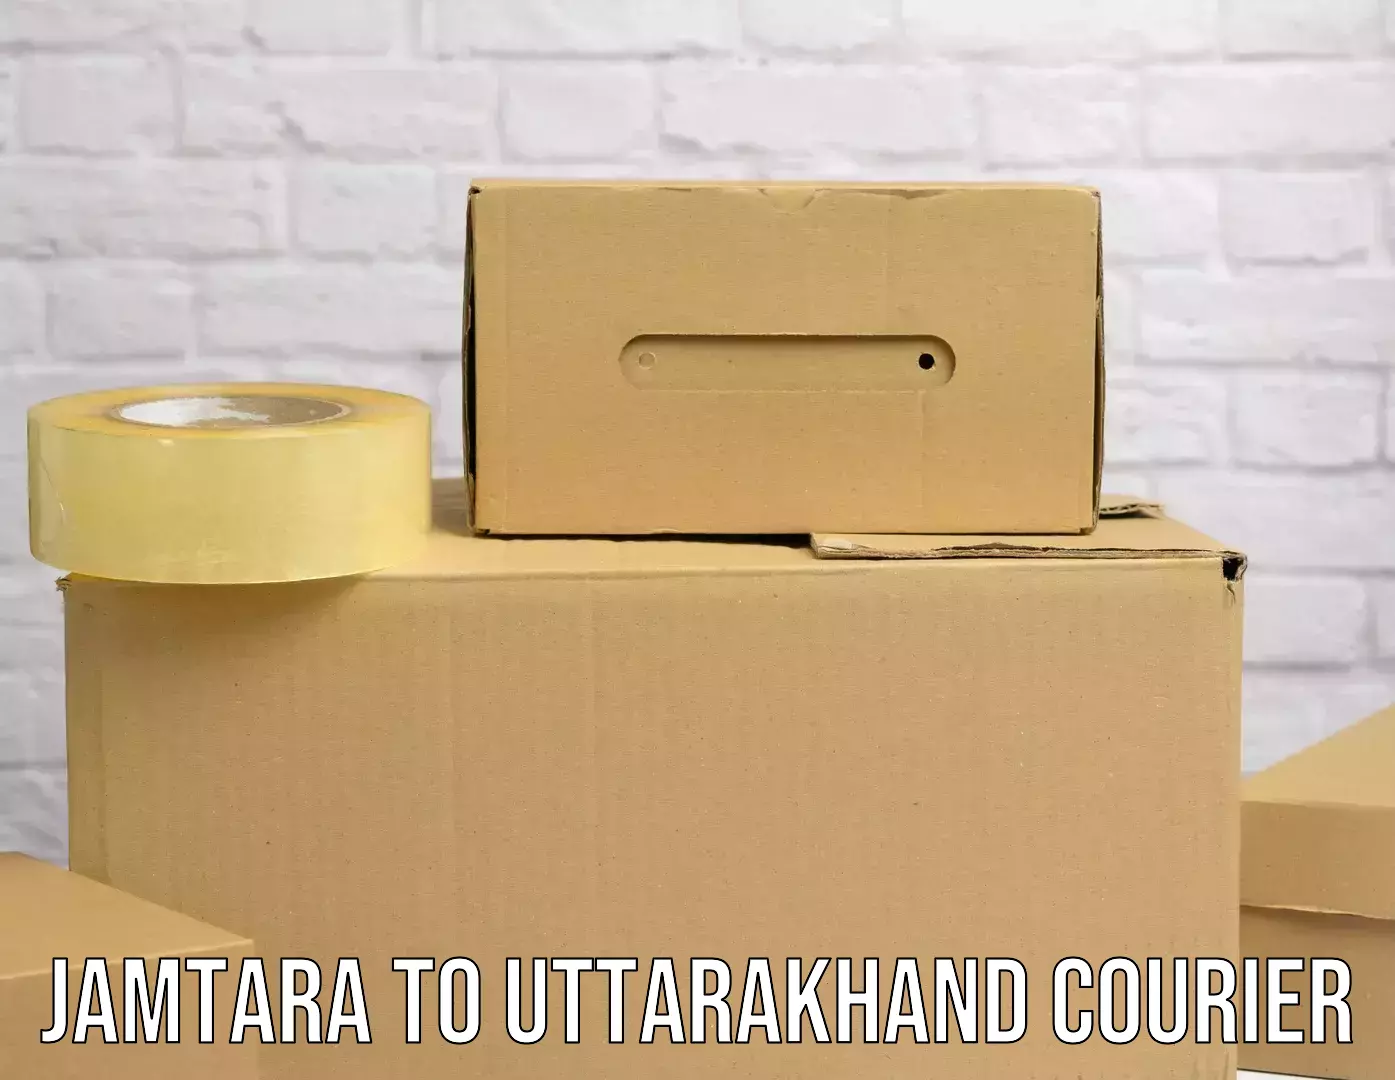 Return courier service Jamtara to Uttarakhand